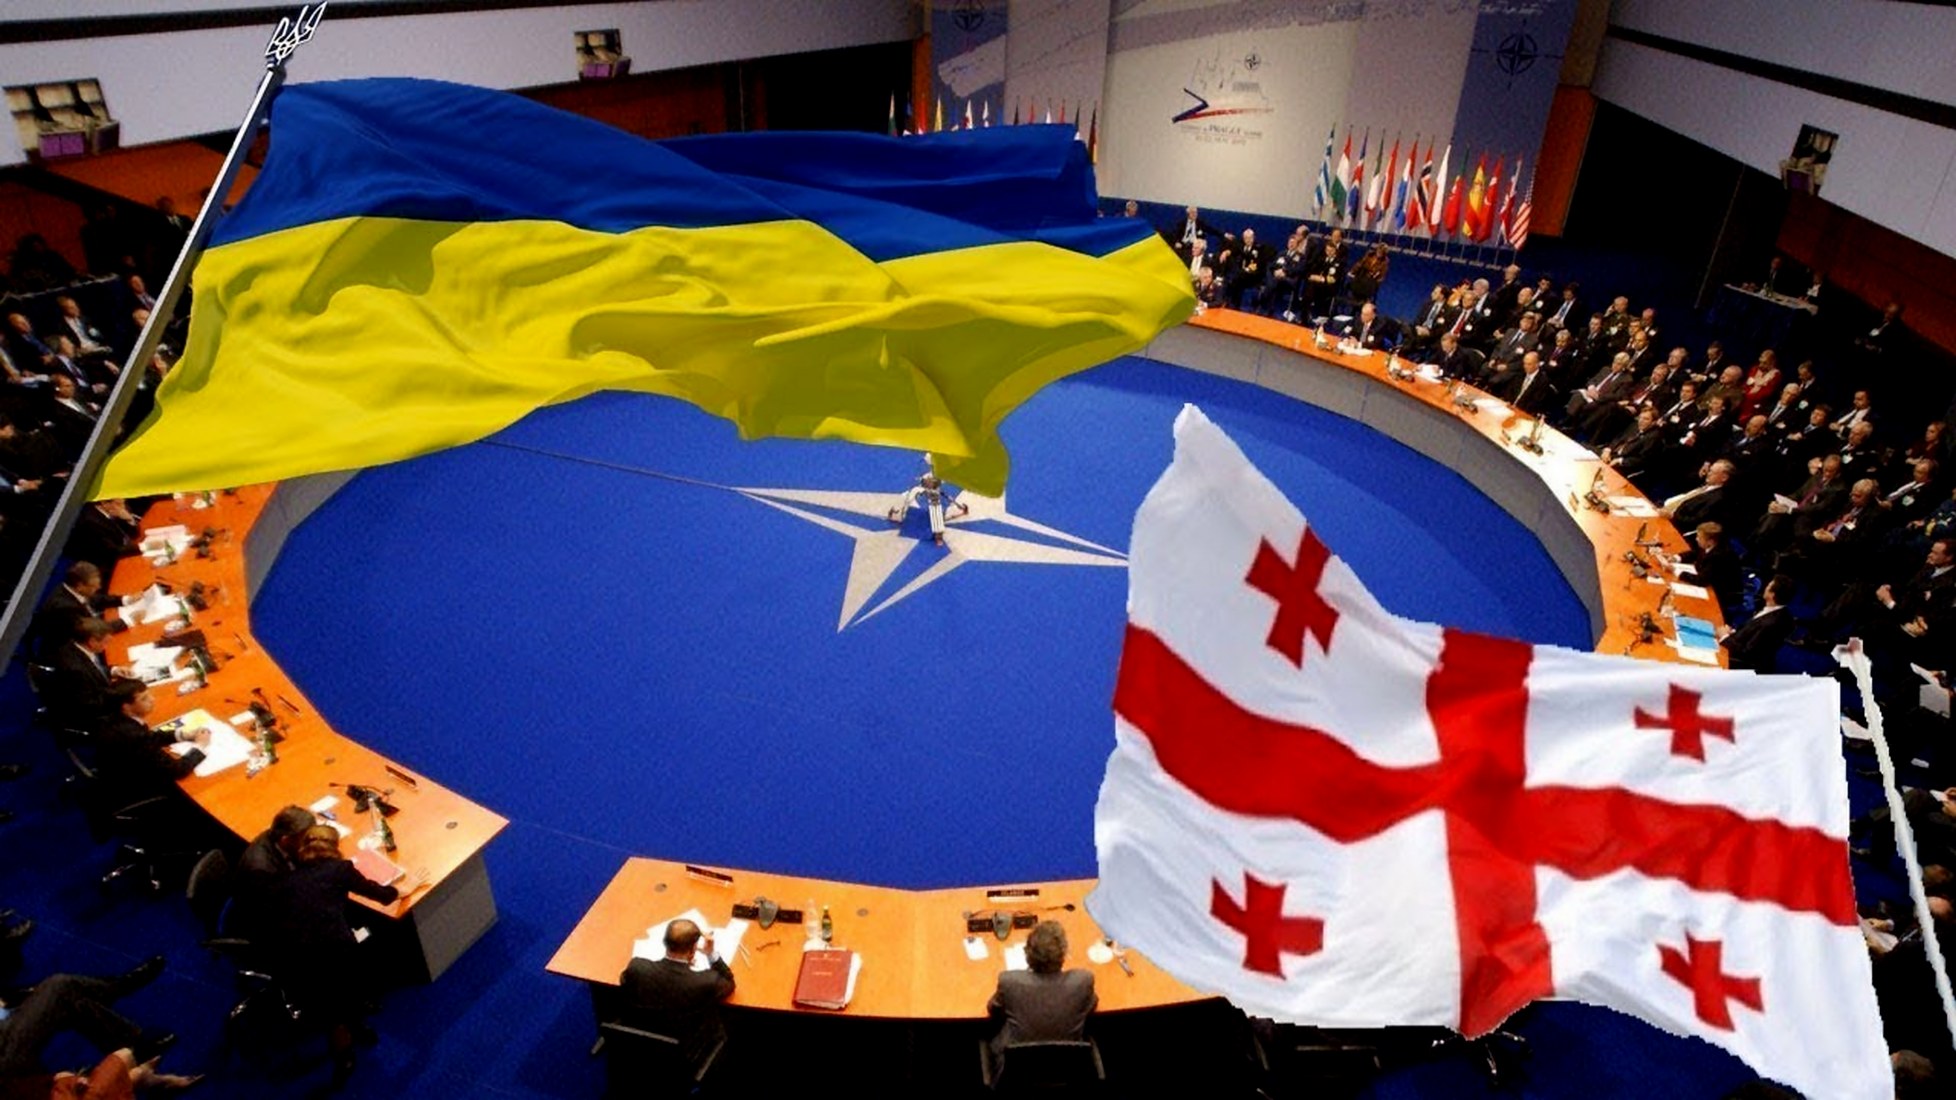 Нато поддержали украину. НАТО Украина Грузия. Вступление Украины и Грузии в НАТО. Украина и Грузия вступают в НАТО. Флаги НАТО Украины и Грузии.